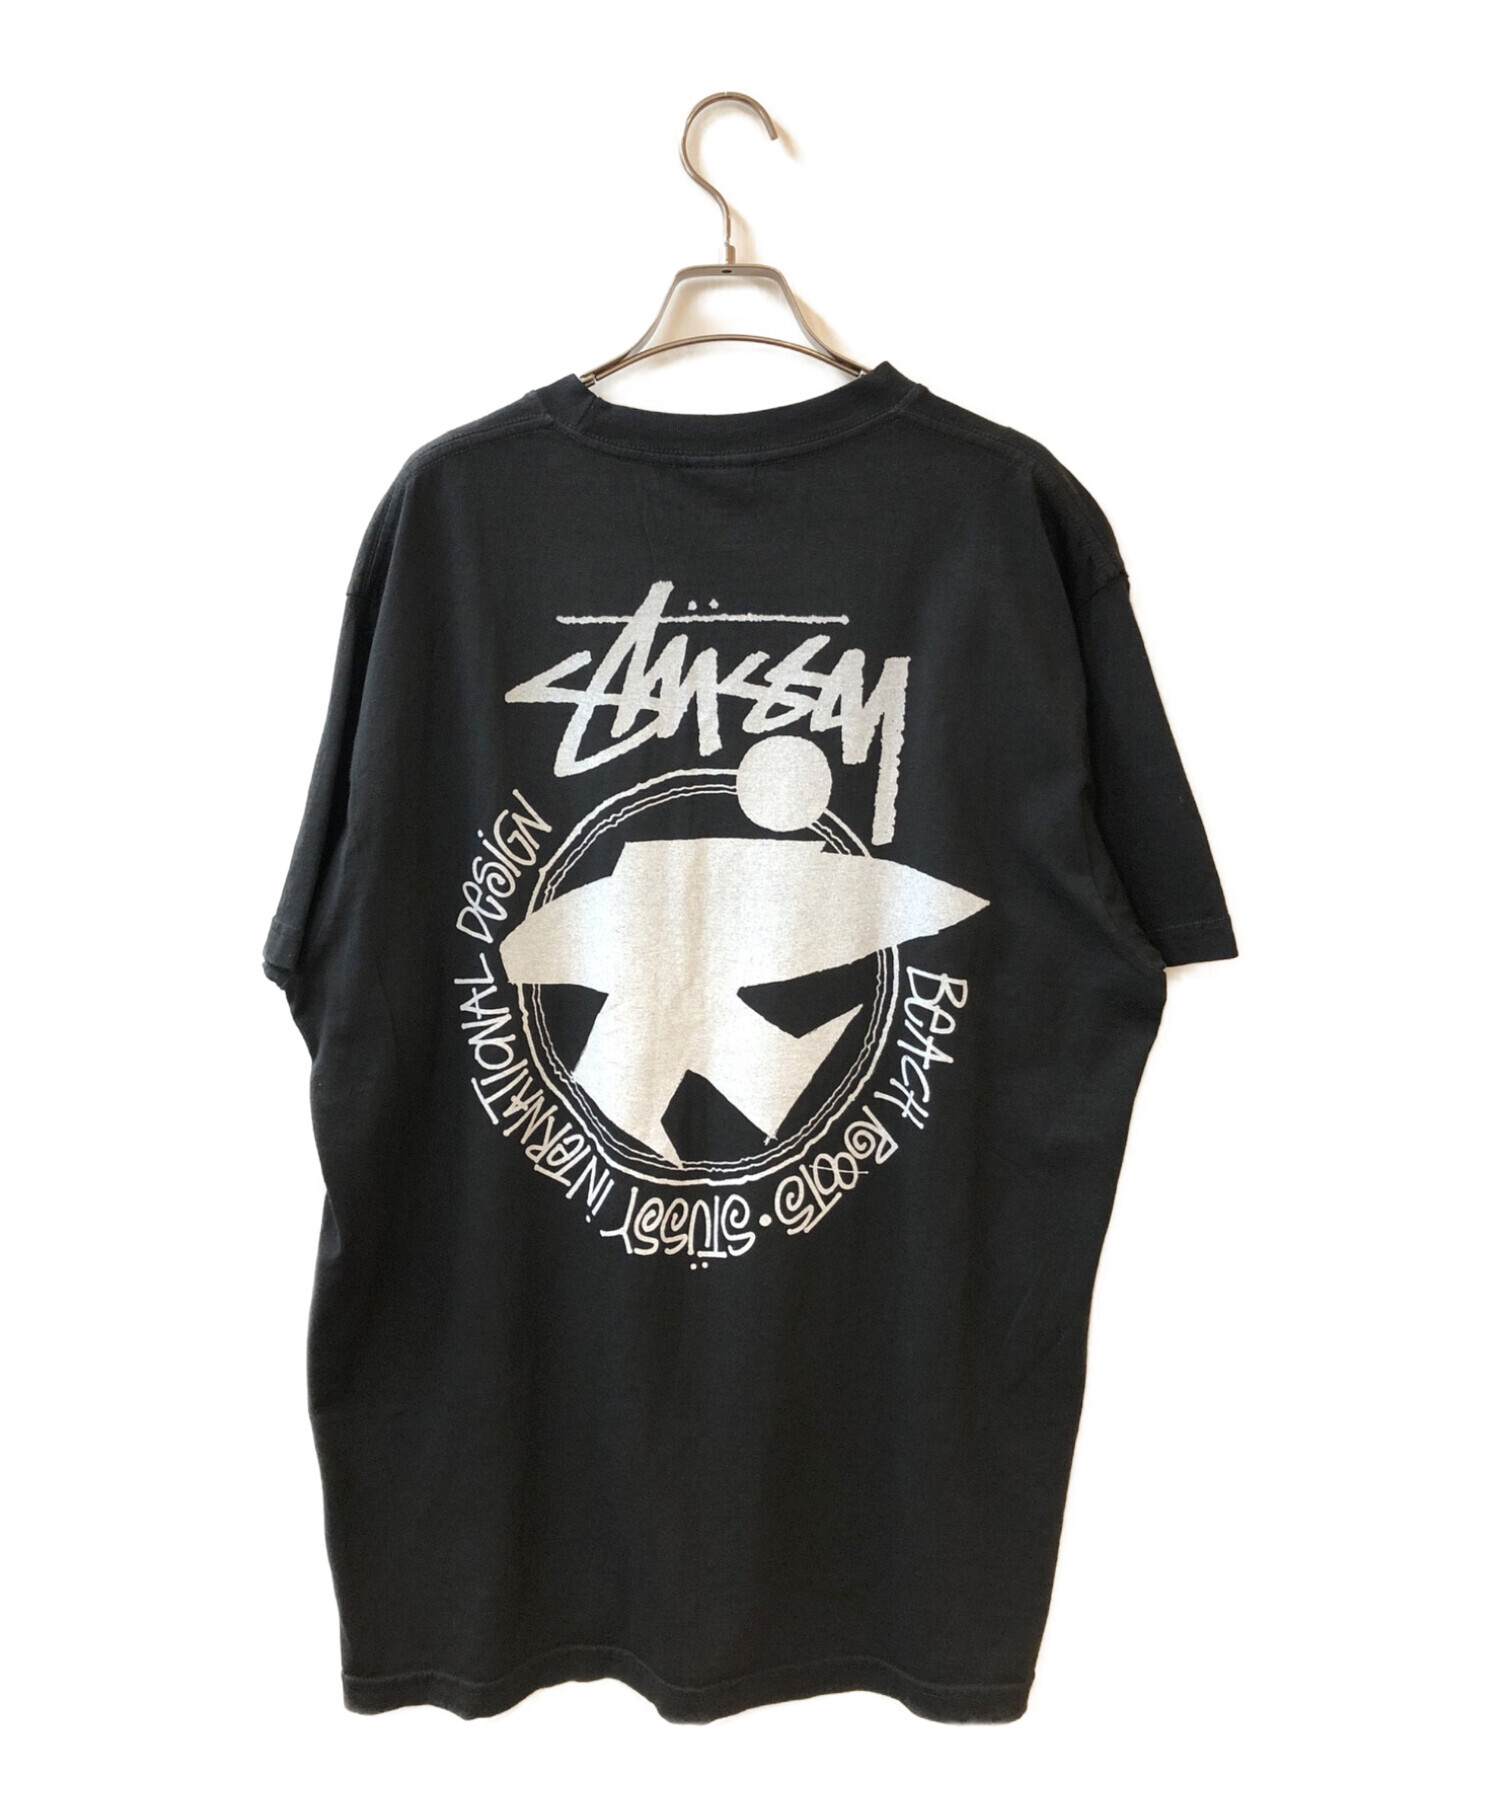 stussy (ステューシー) 復刻サーフマンプリントTシャツ ブラック サイズ:Ⅼ